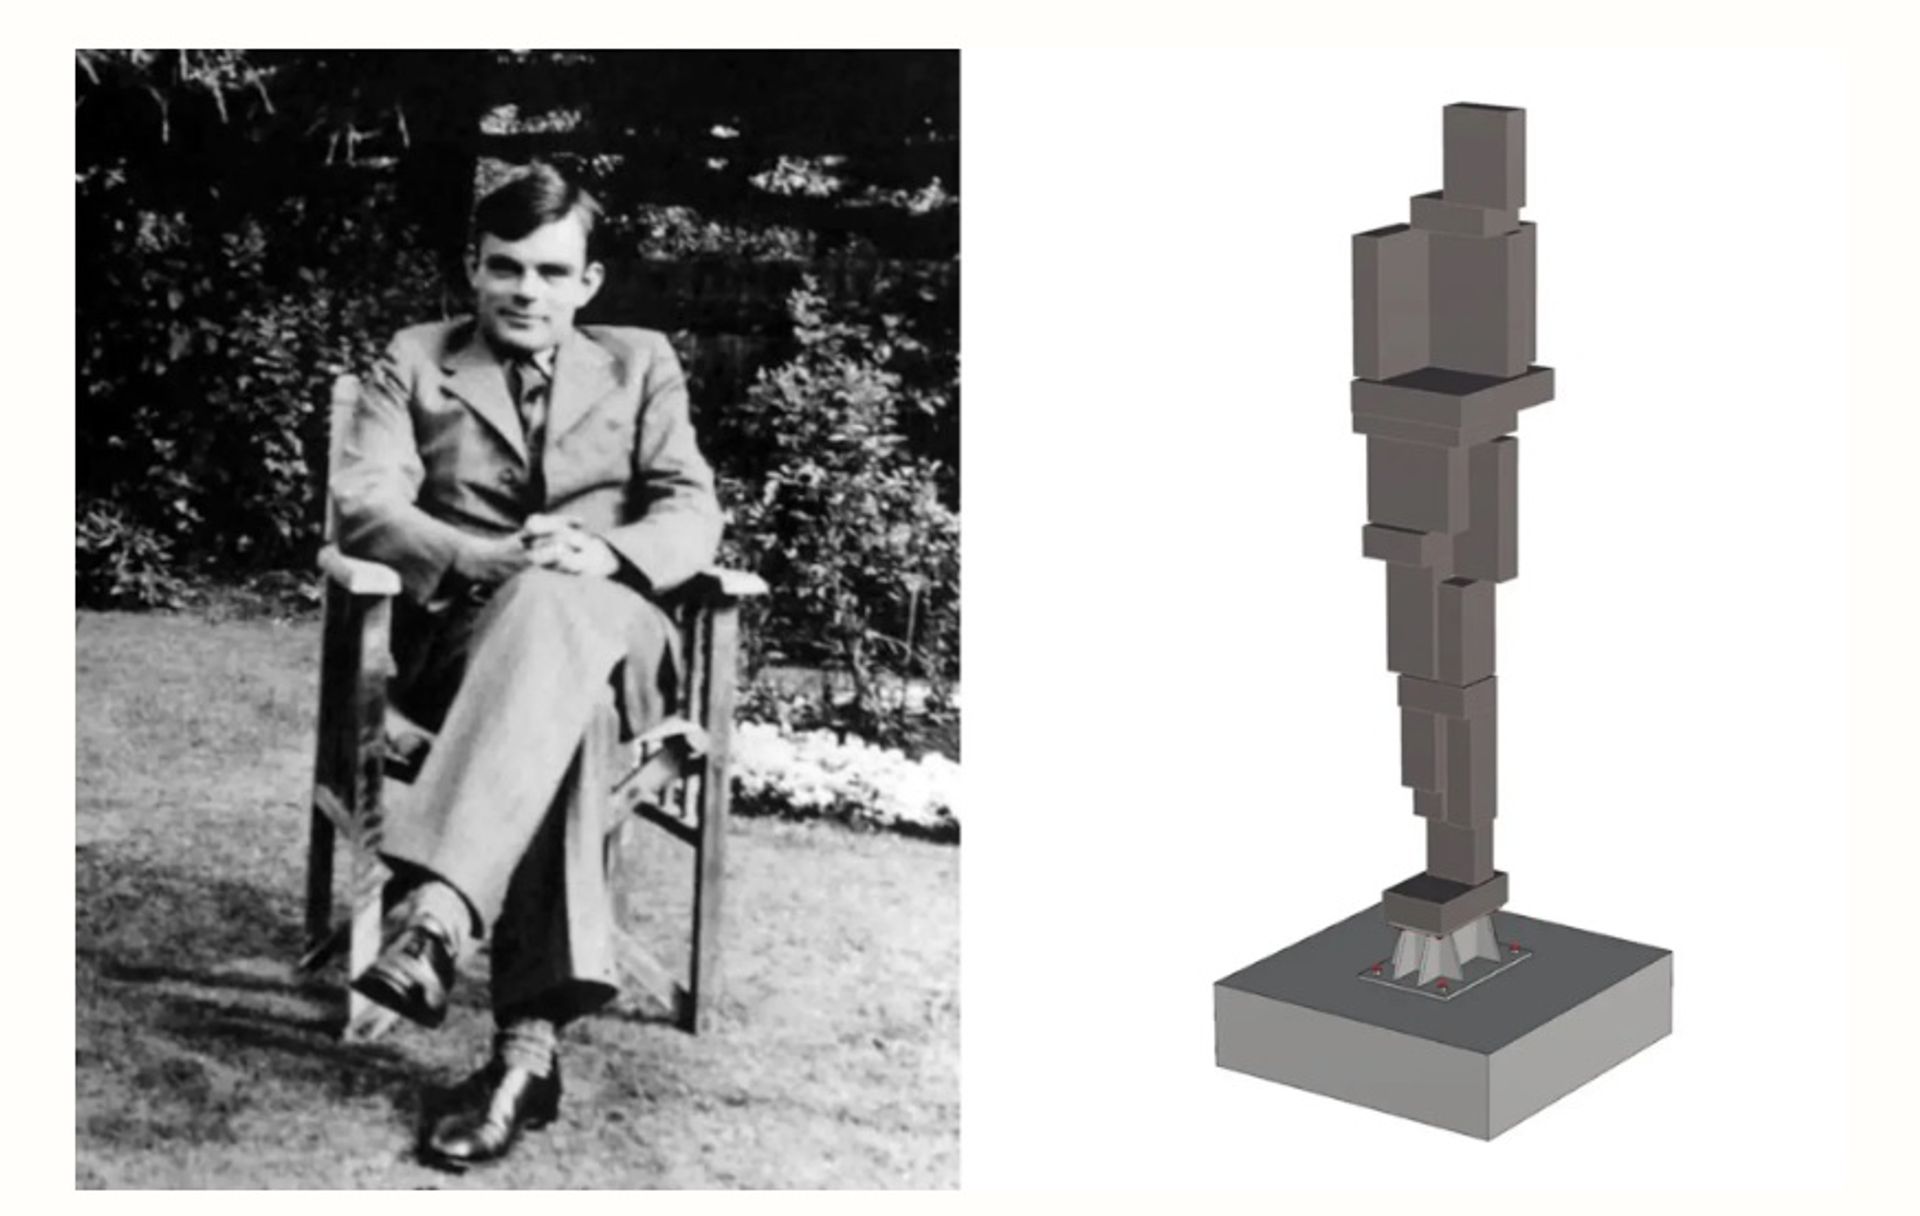 משמאל: אלן טיורינג בשנת 1930. מימין: הפסל המוצע של אנטוני גורמלי להנצחת טיורינג

עיבוד פסלים: באדיבות סטודיו אנטוני גורמלי/מועצת העיר קיימברידג'